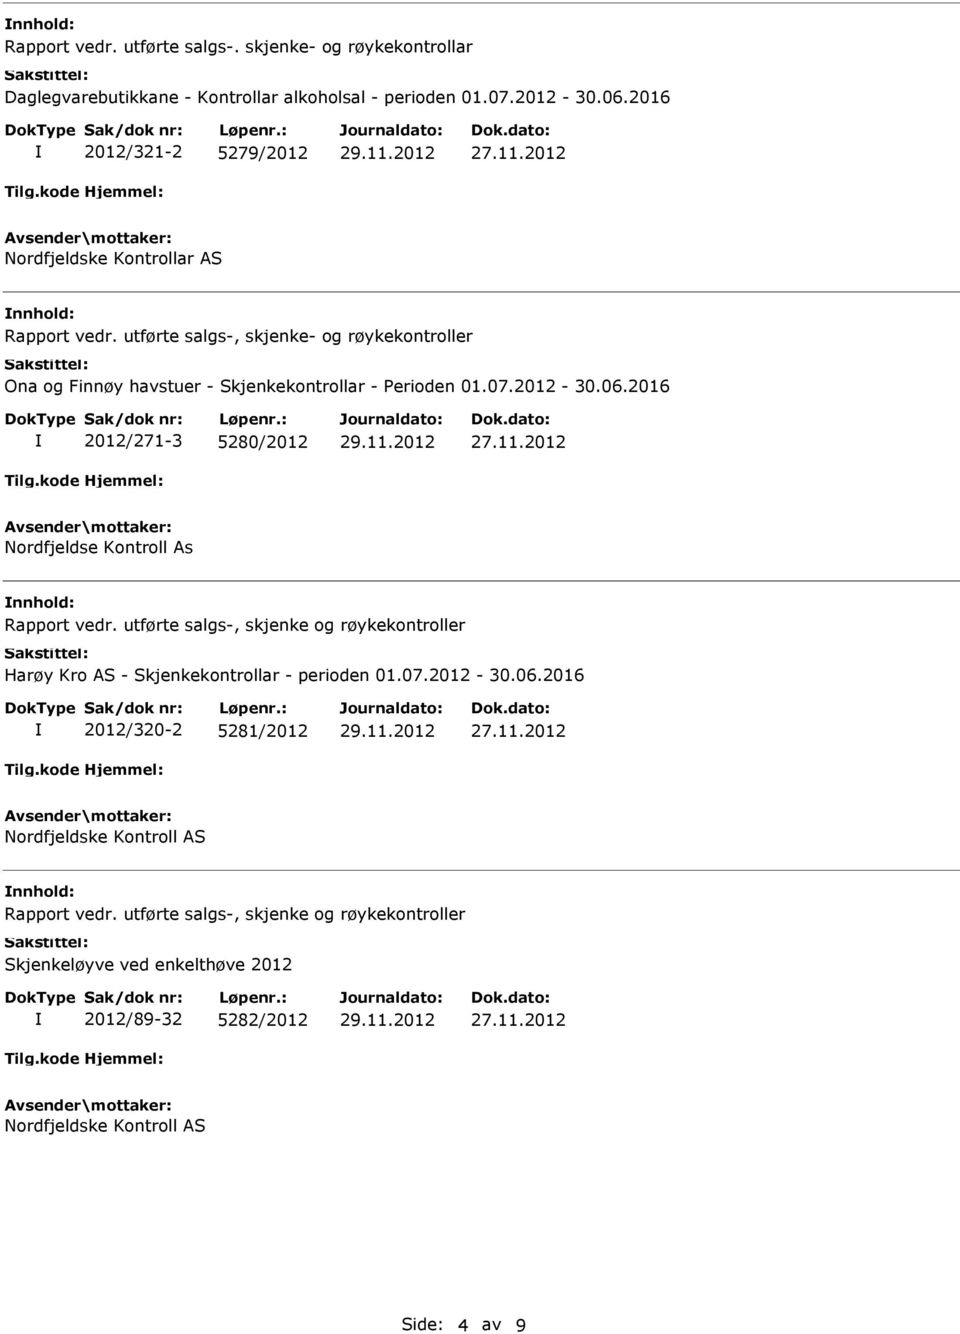 07.2012-30.06.2016 2012/271-3 5280/2012 Nordfjeldse Kontroll As Rapport vedr. utførte salgs-, skjenke og røykekontroller Harøy Kro AS - Skjenkekontrollar - perioden 01.